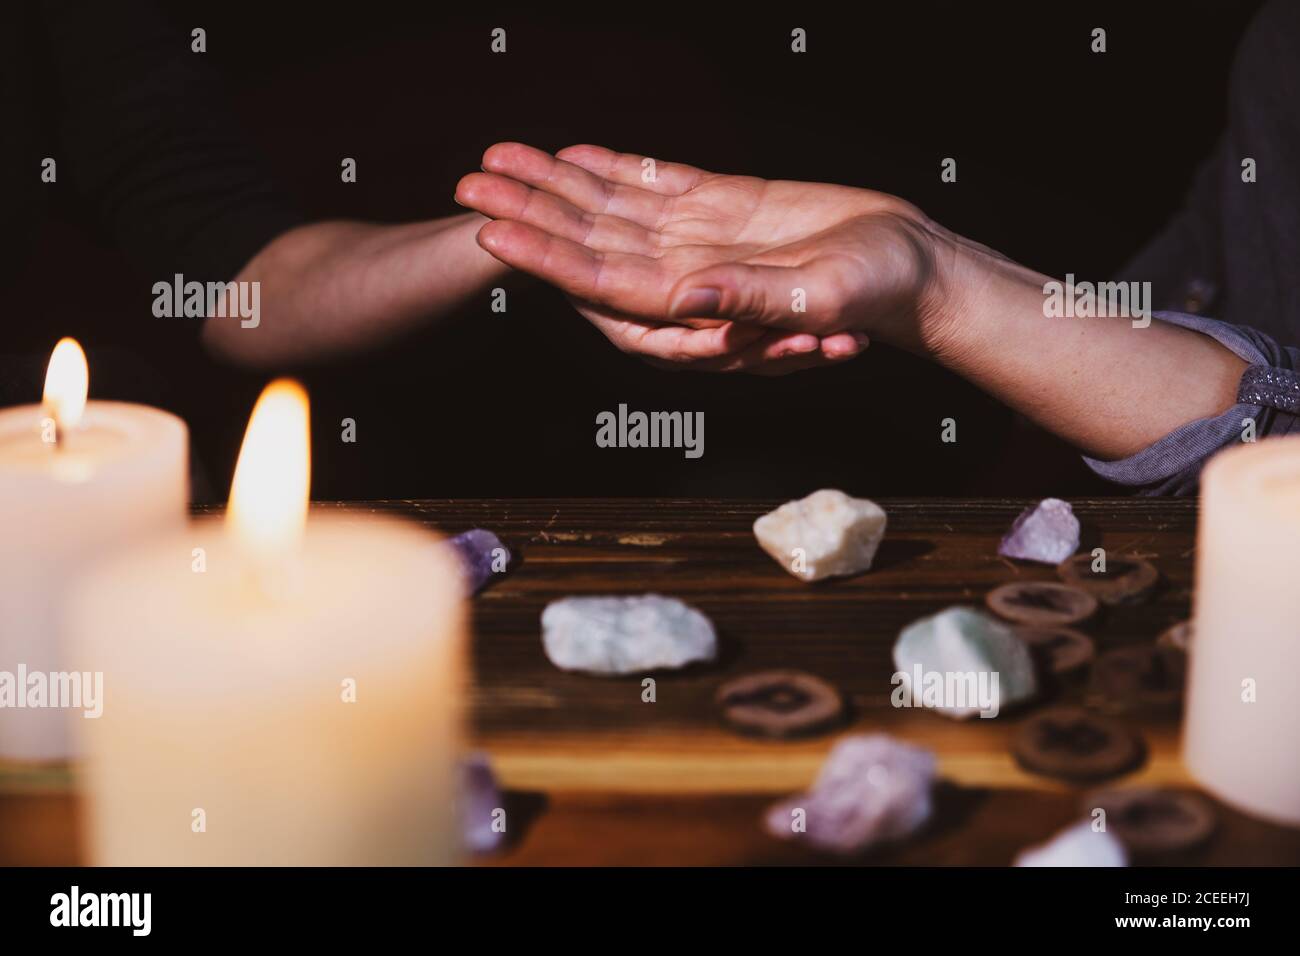 palmistry o lectura de la palma, fortuneteller sosteniendo una mano, piedras y velas curativas, horóscopo y oráculo Foto de stock